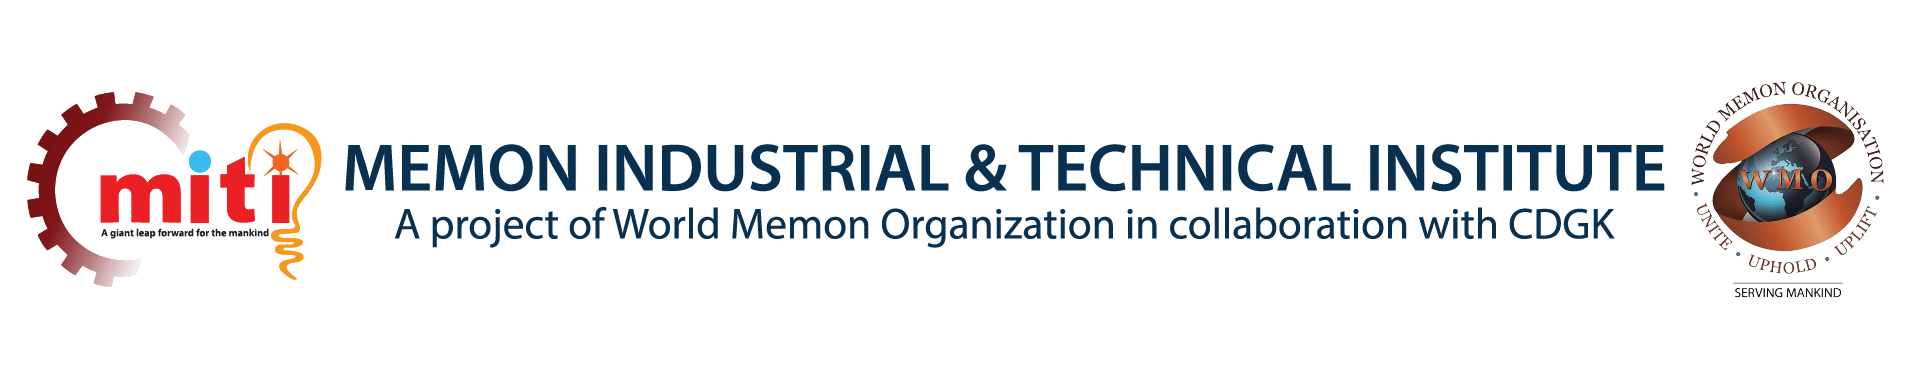 Memon Industrial & Technical Institute